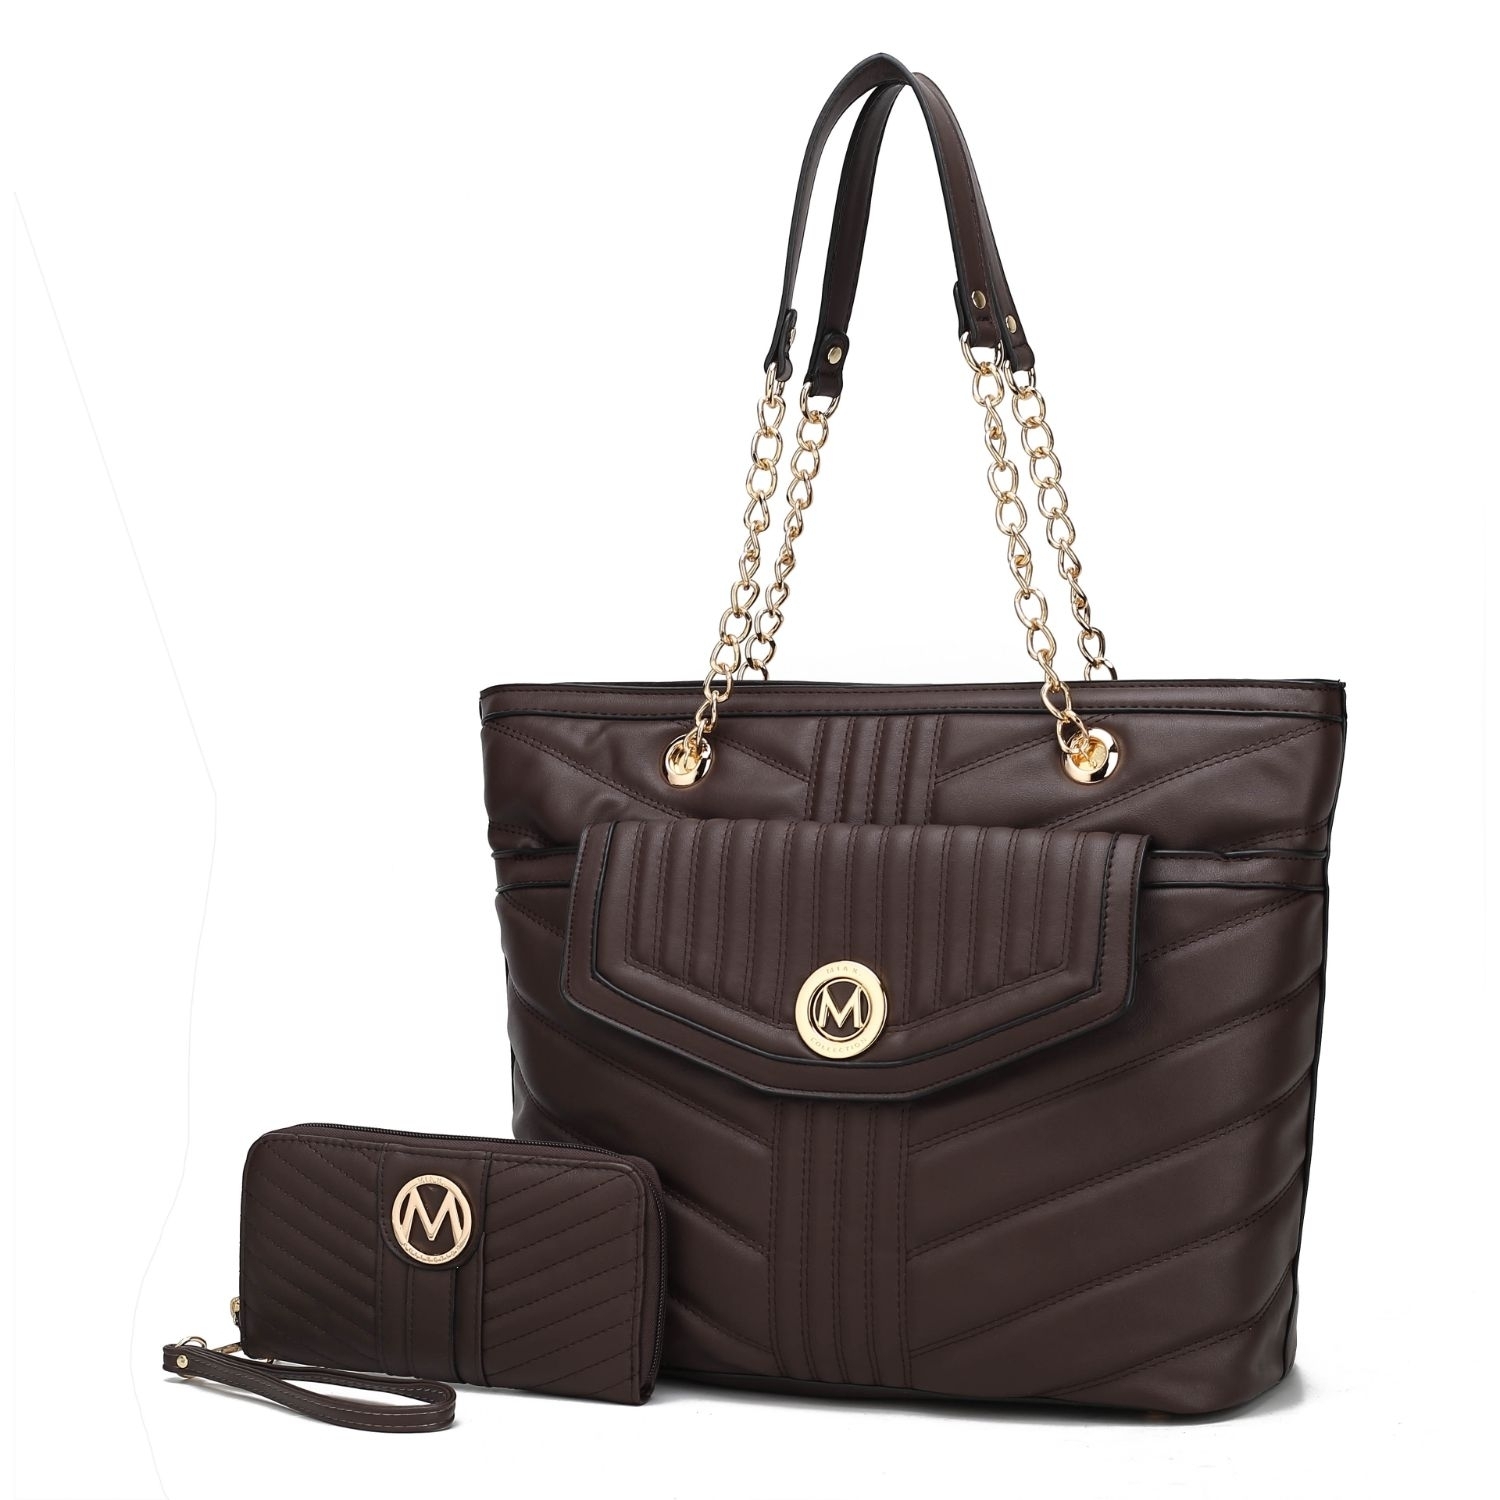 MKF Collection Chiari Tote Handbag With Wallet By Mia K. 2 Pieces. - Black